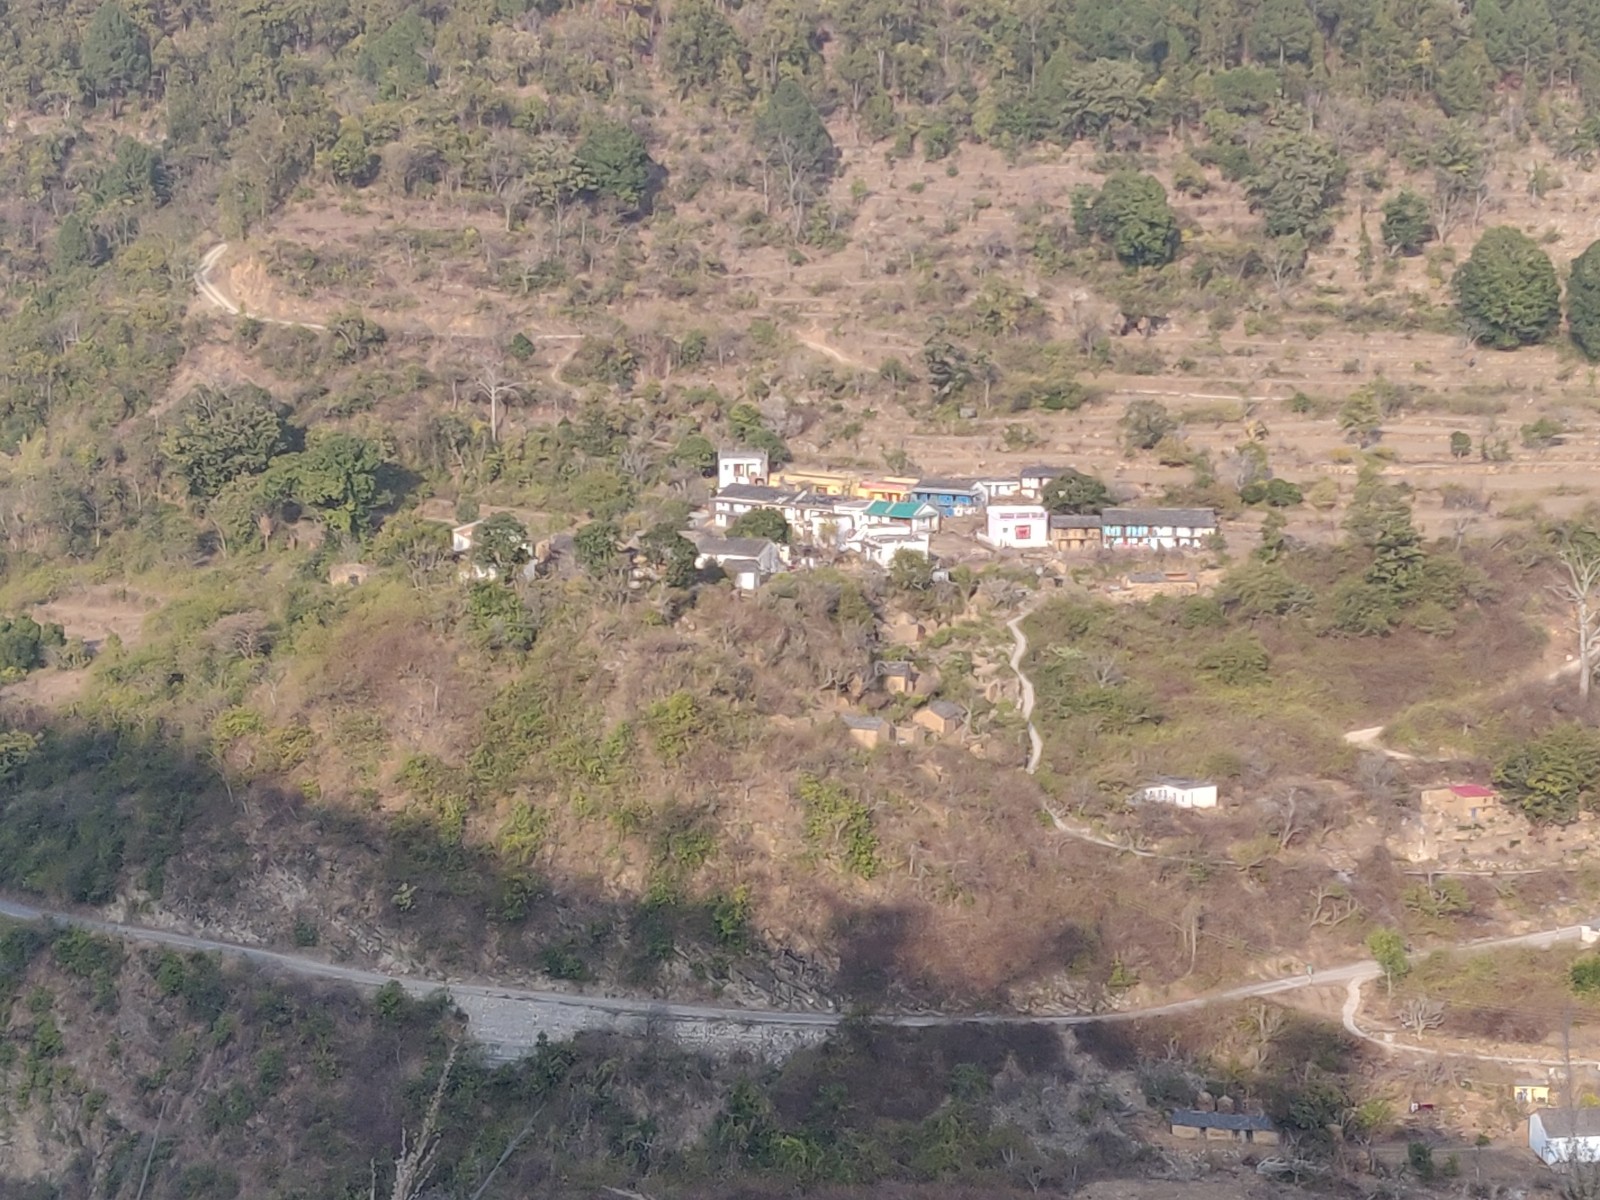 Jaikot village, Pauri Garhwal